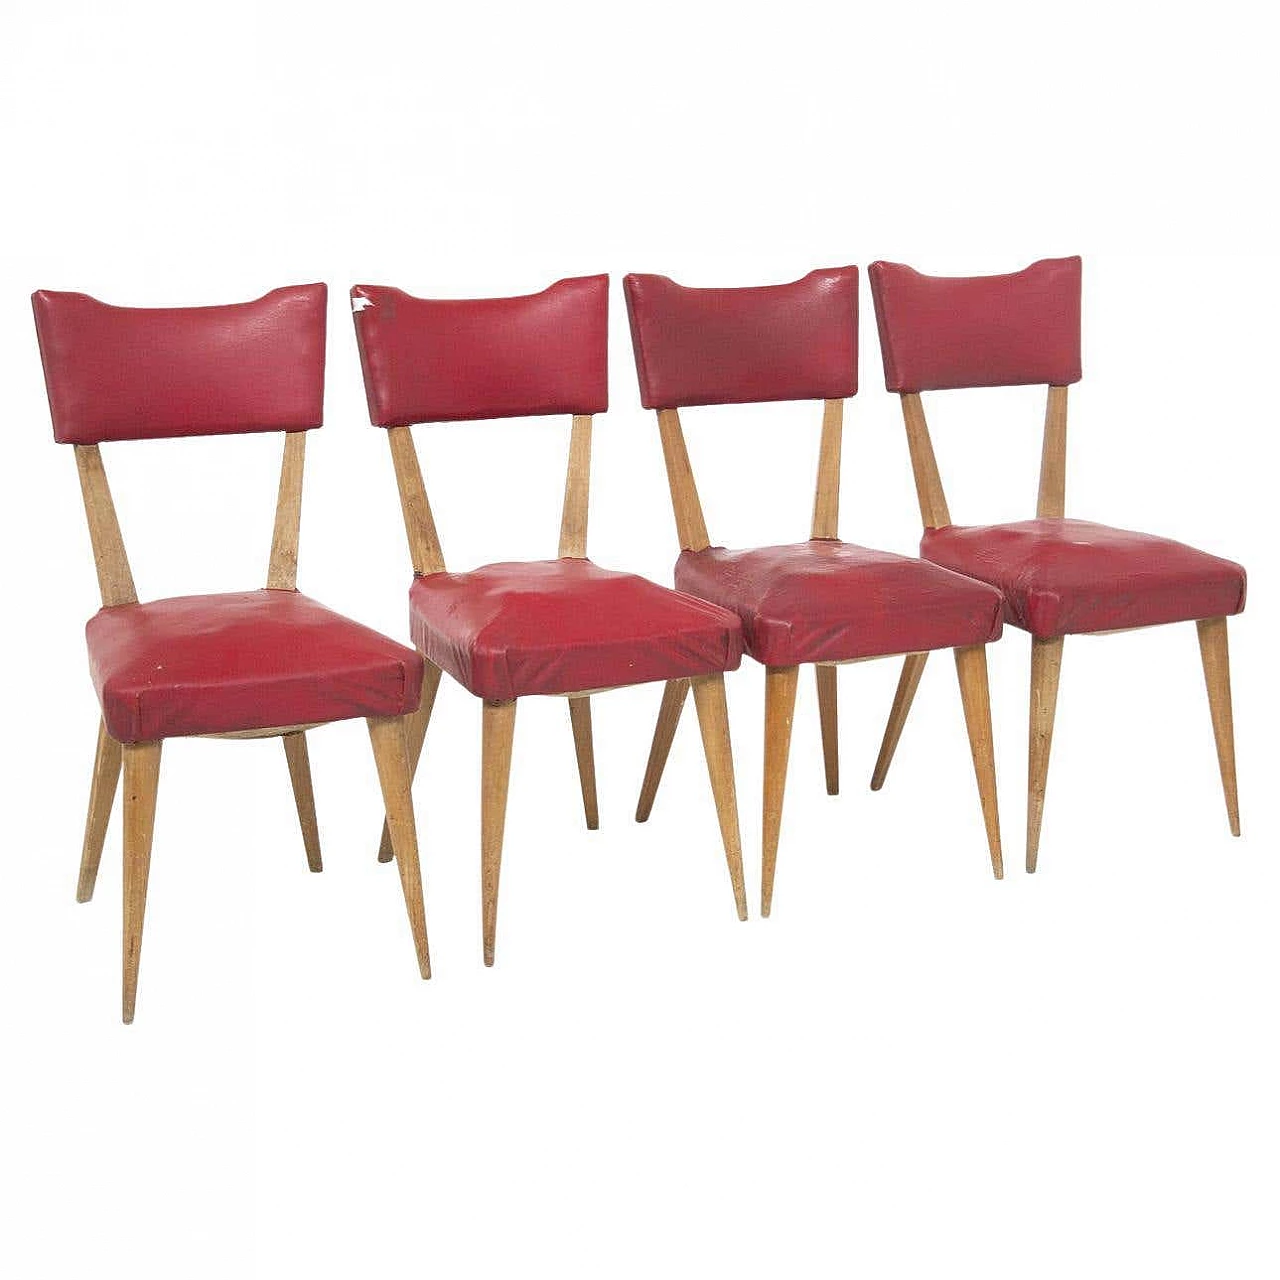 4 Sedie in legno rivestite in skai rosso, anni '50 4